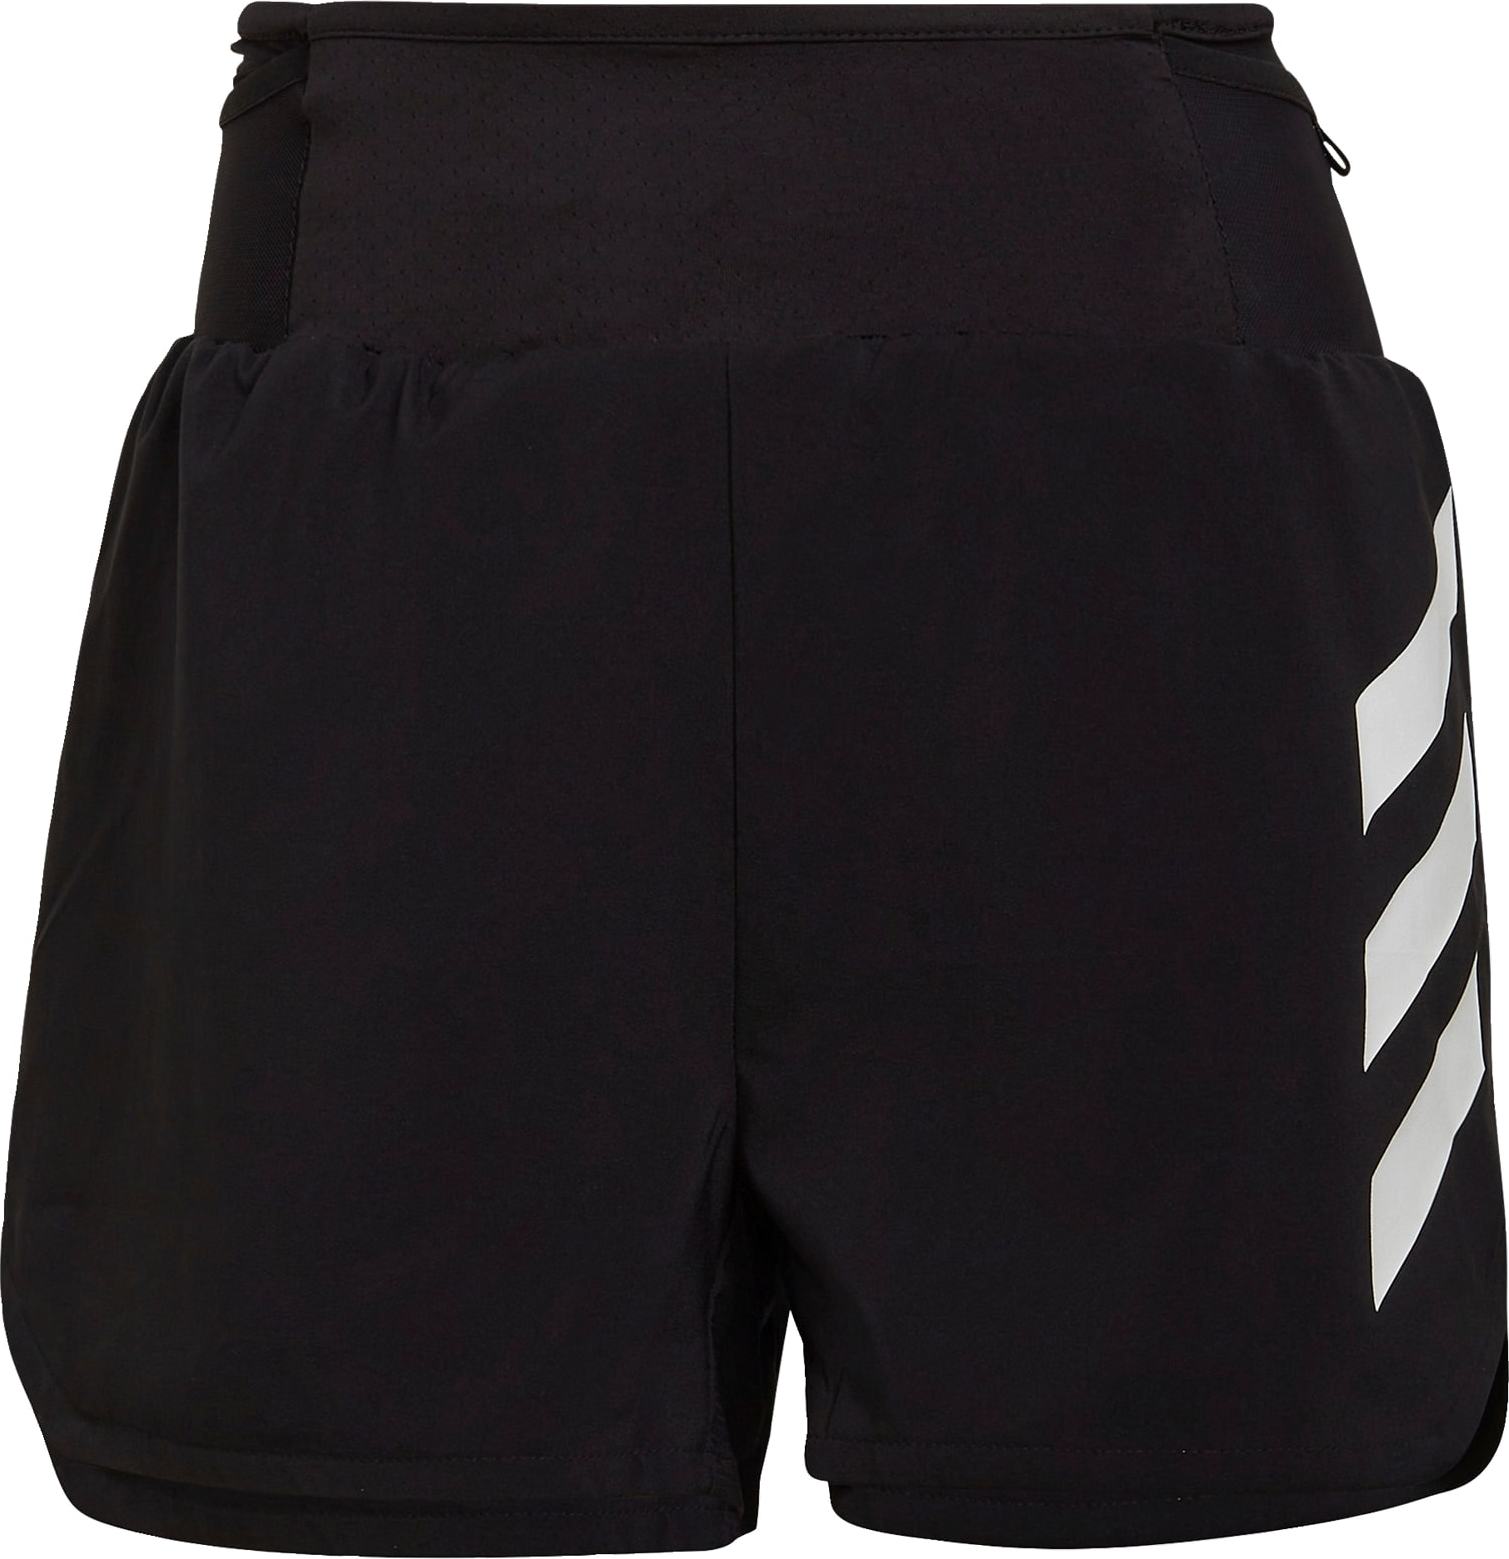 adidas Terrex Sportovní kalhoty černá / bílá